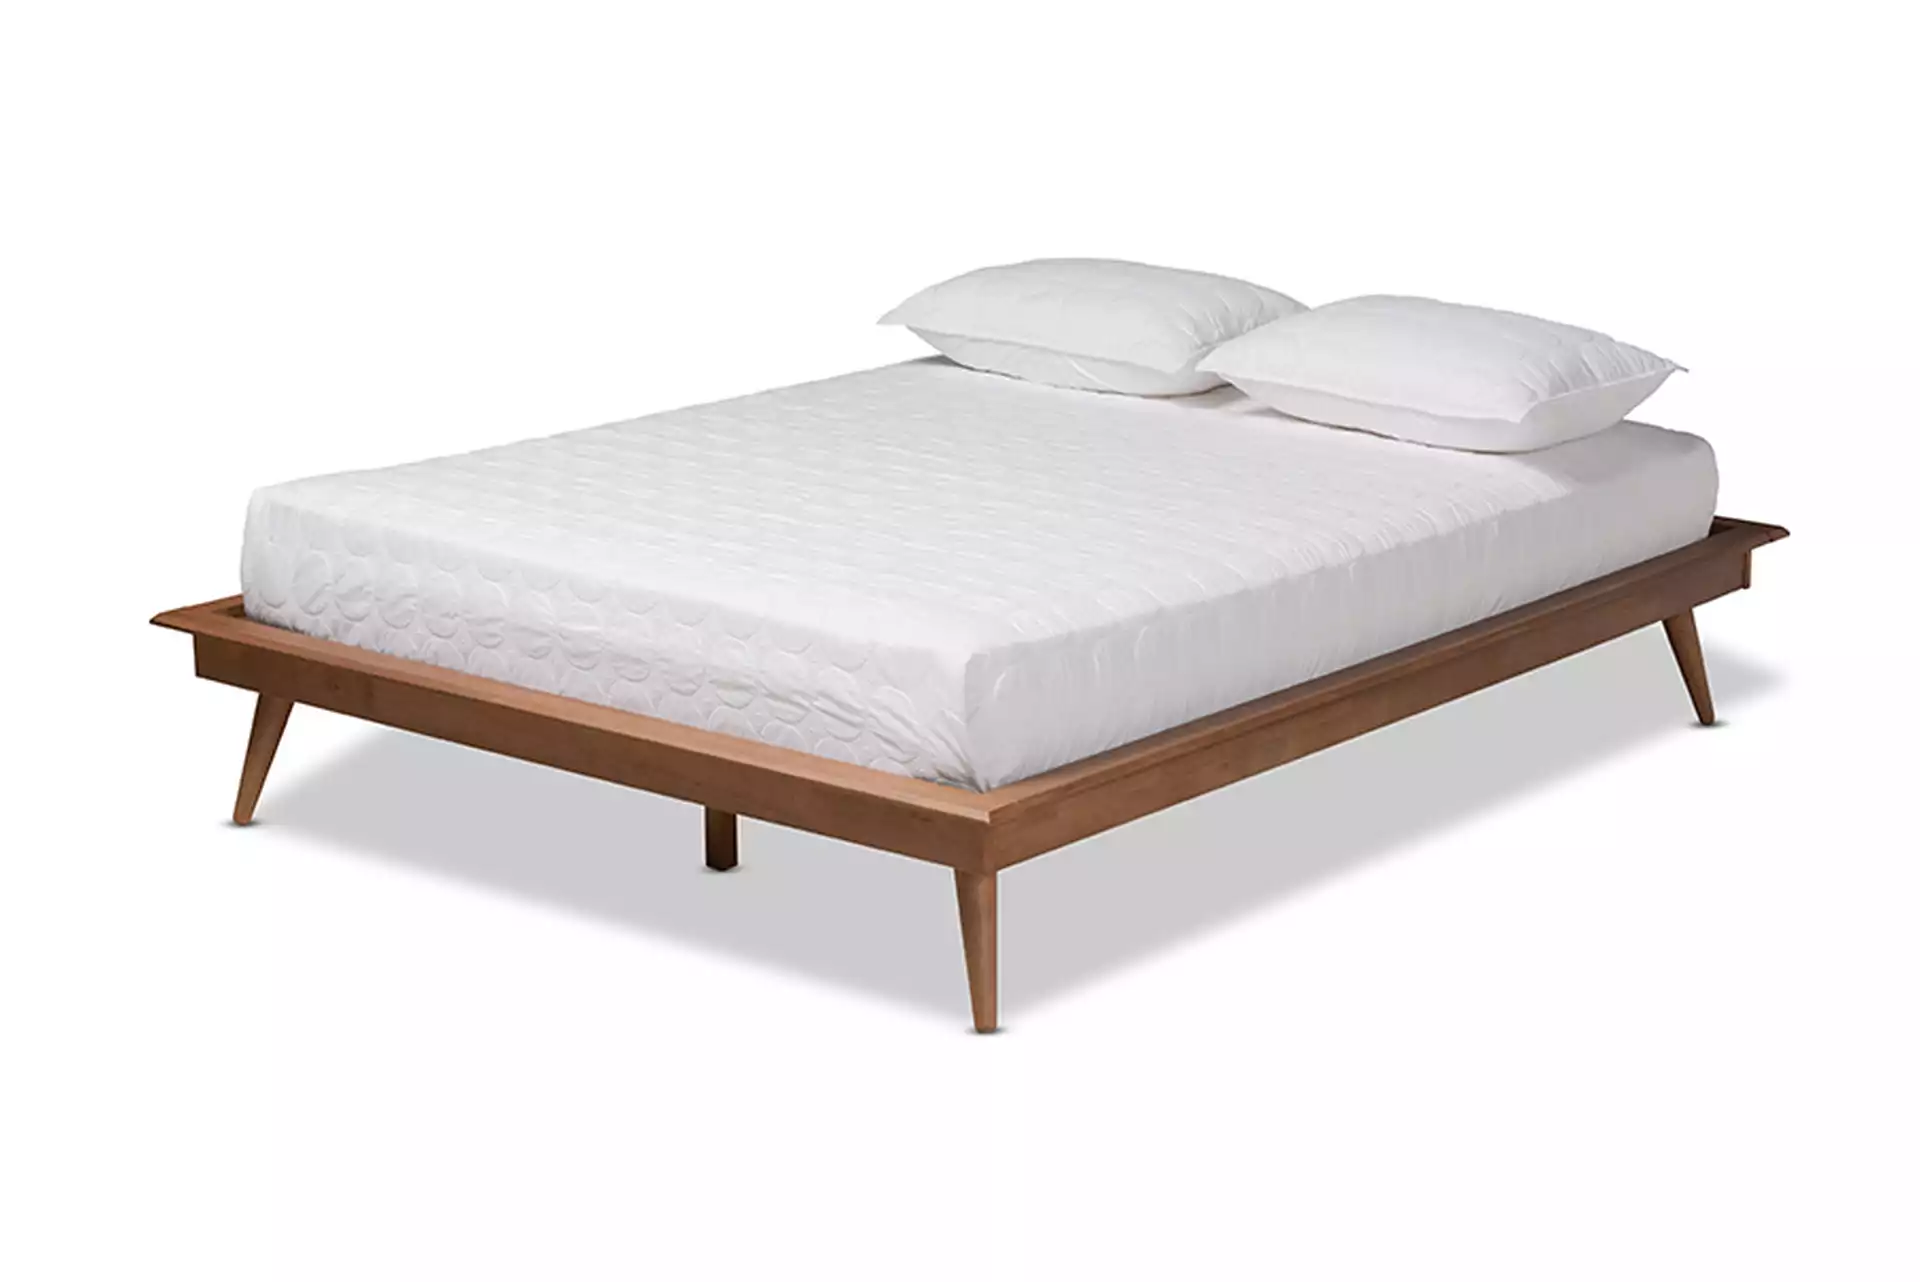 Karine Mid-Century Modern Walnut Brown Finished Wood Full Size Platform Bed Frame